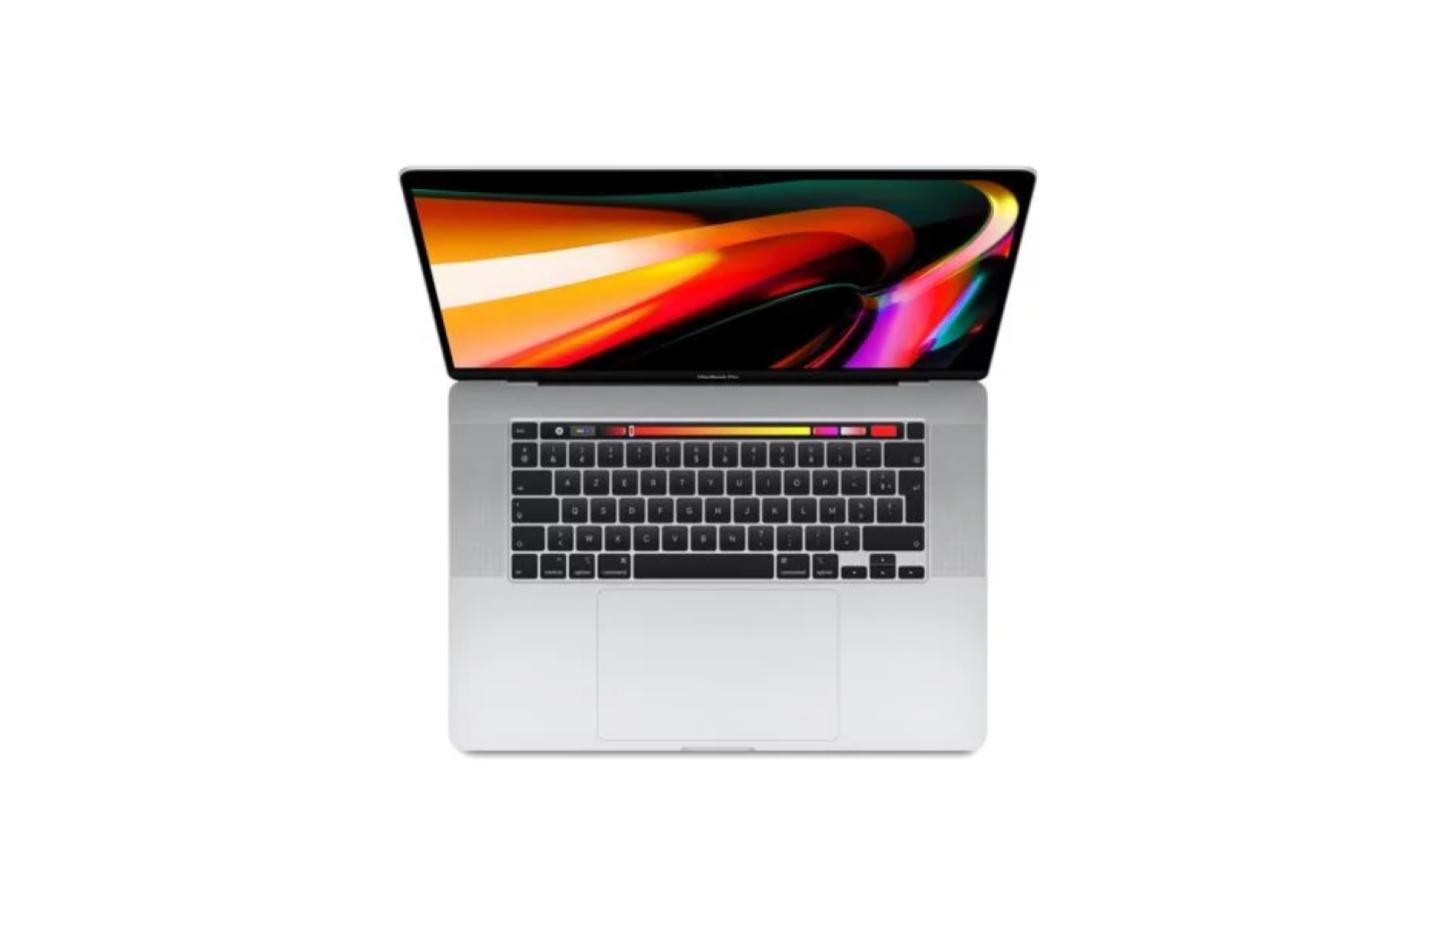 Le Macbook Pro 16 équipé d'un i9 est moins cher que celui avec un i7